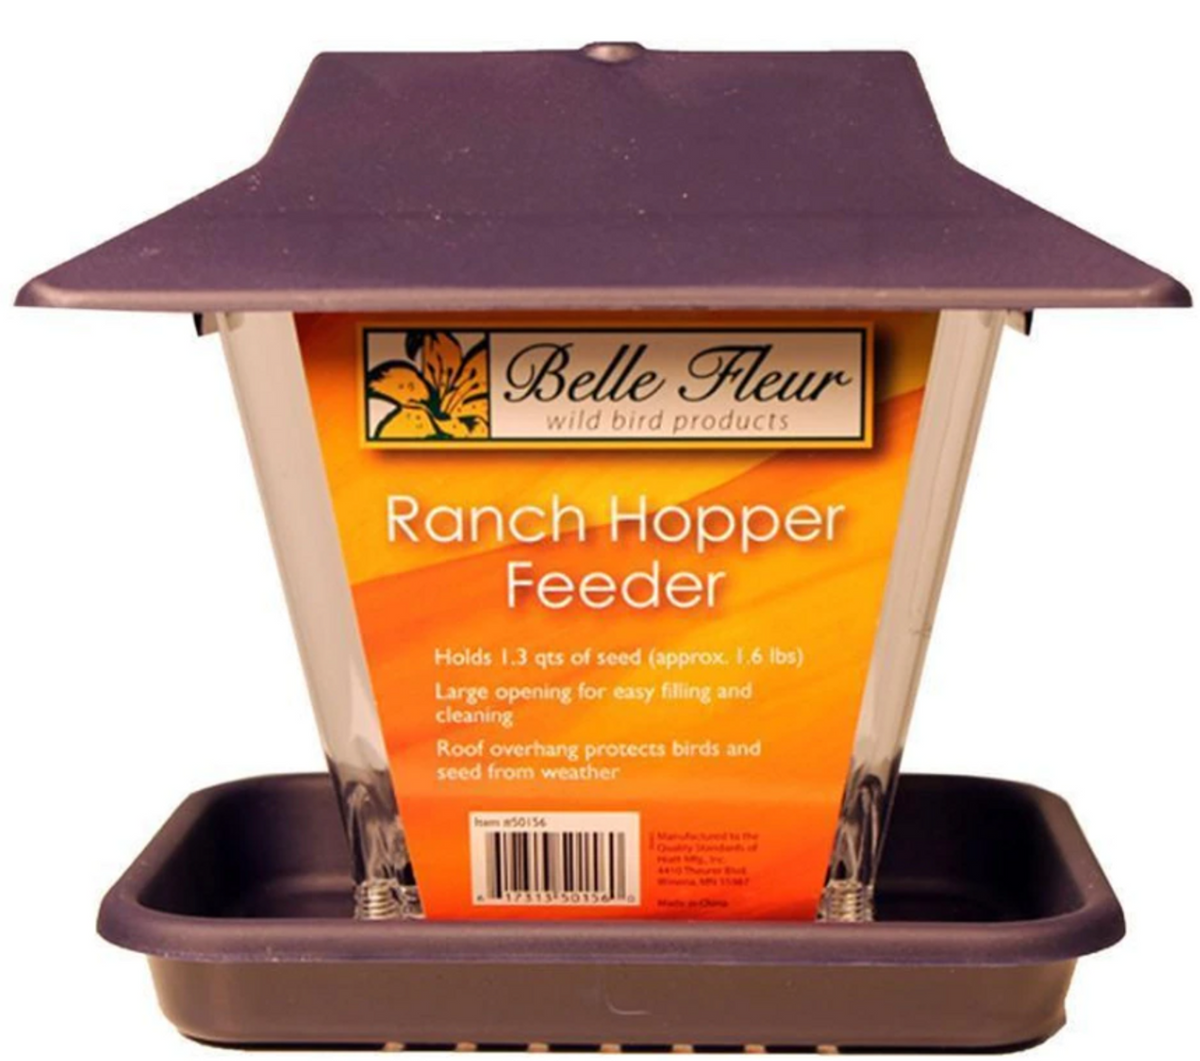 Classic Brands - Ranch Hopper Feeder